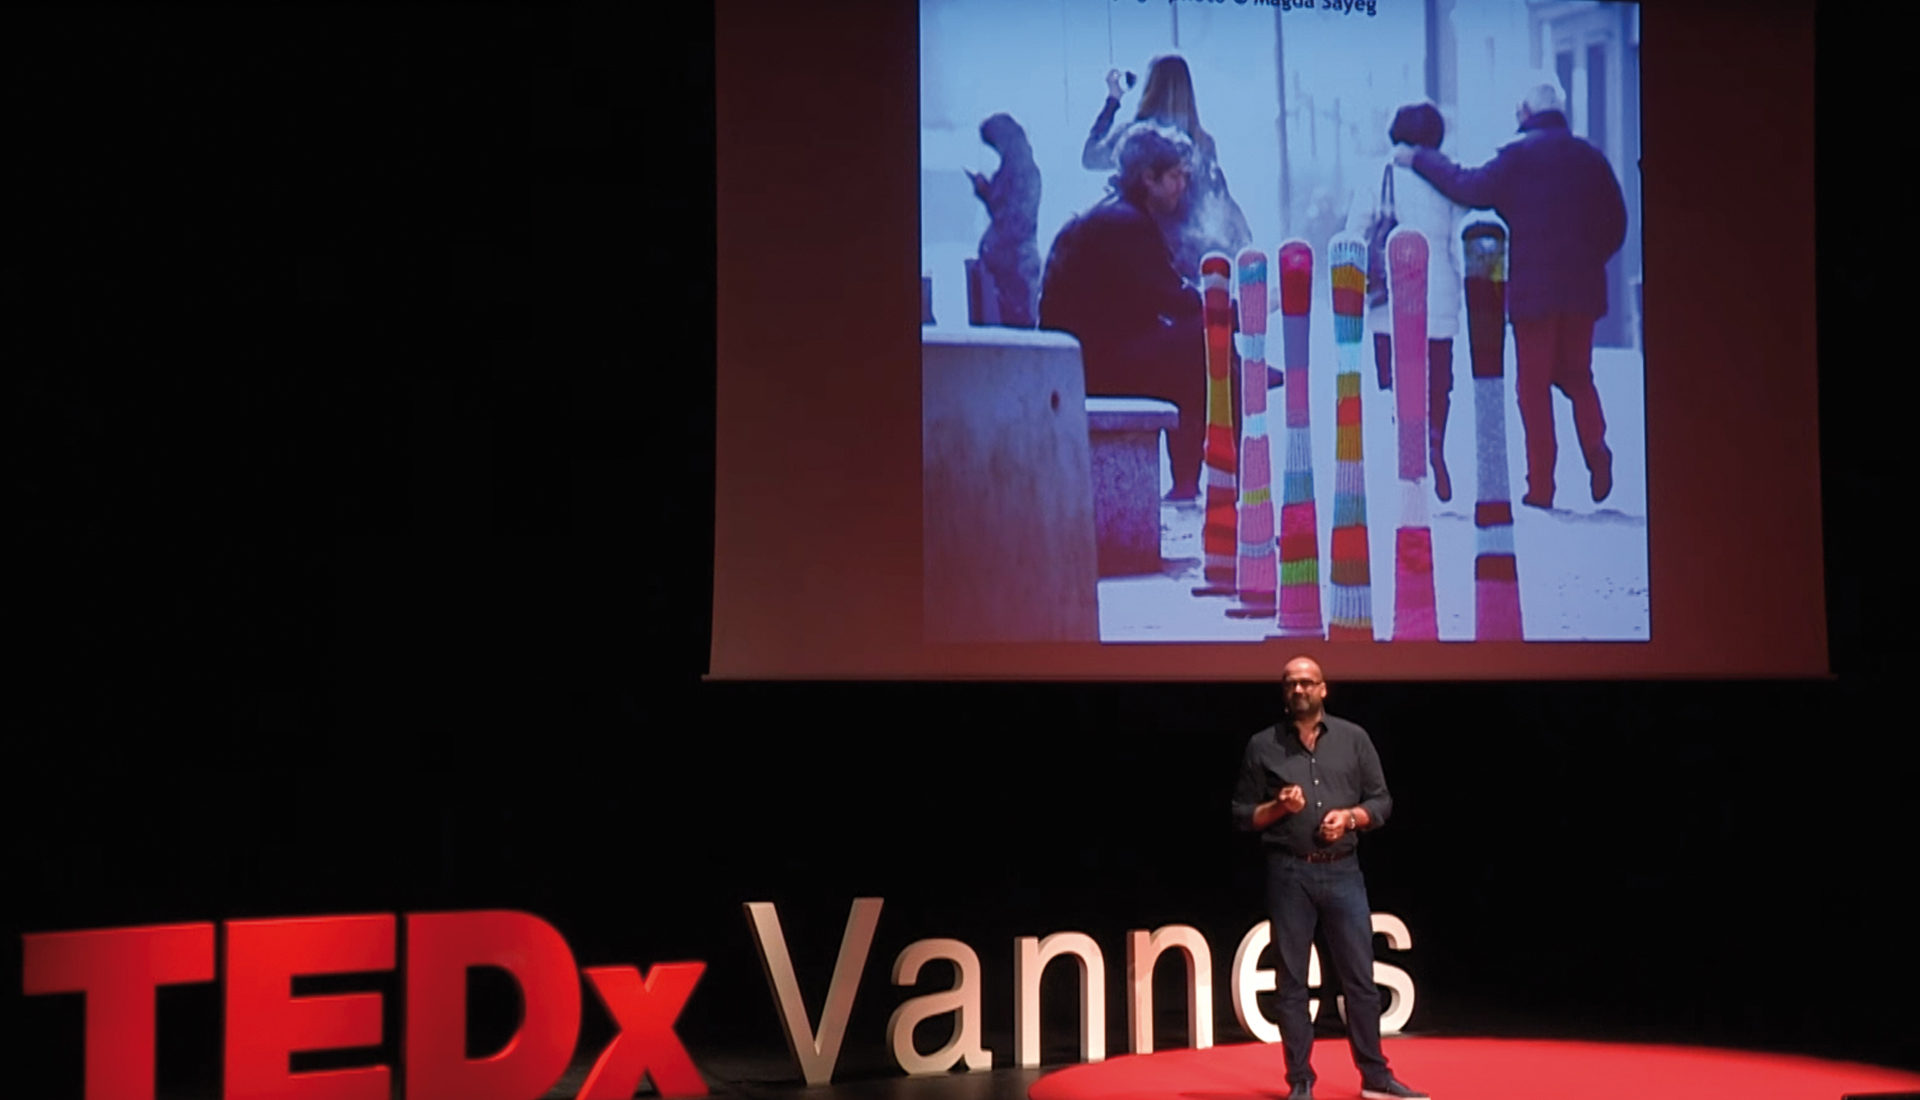 Laurent Sanchez TEDX Vannes Street Art Avenue Petition Change